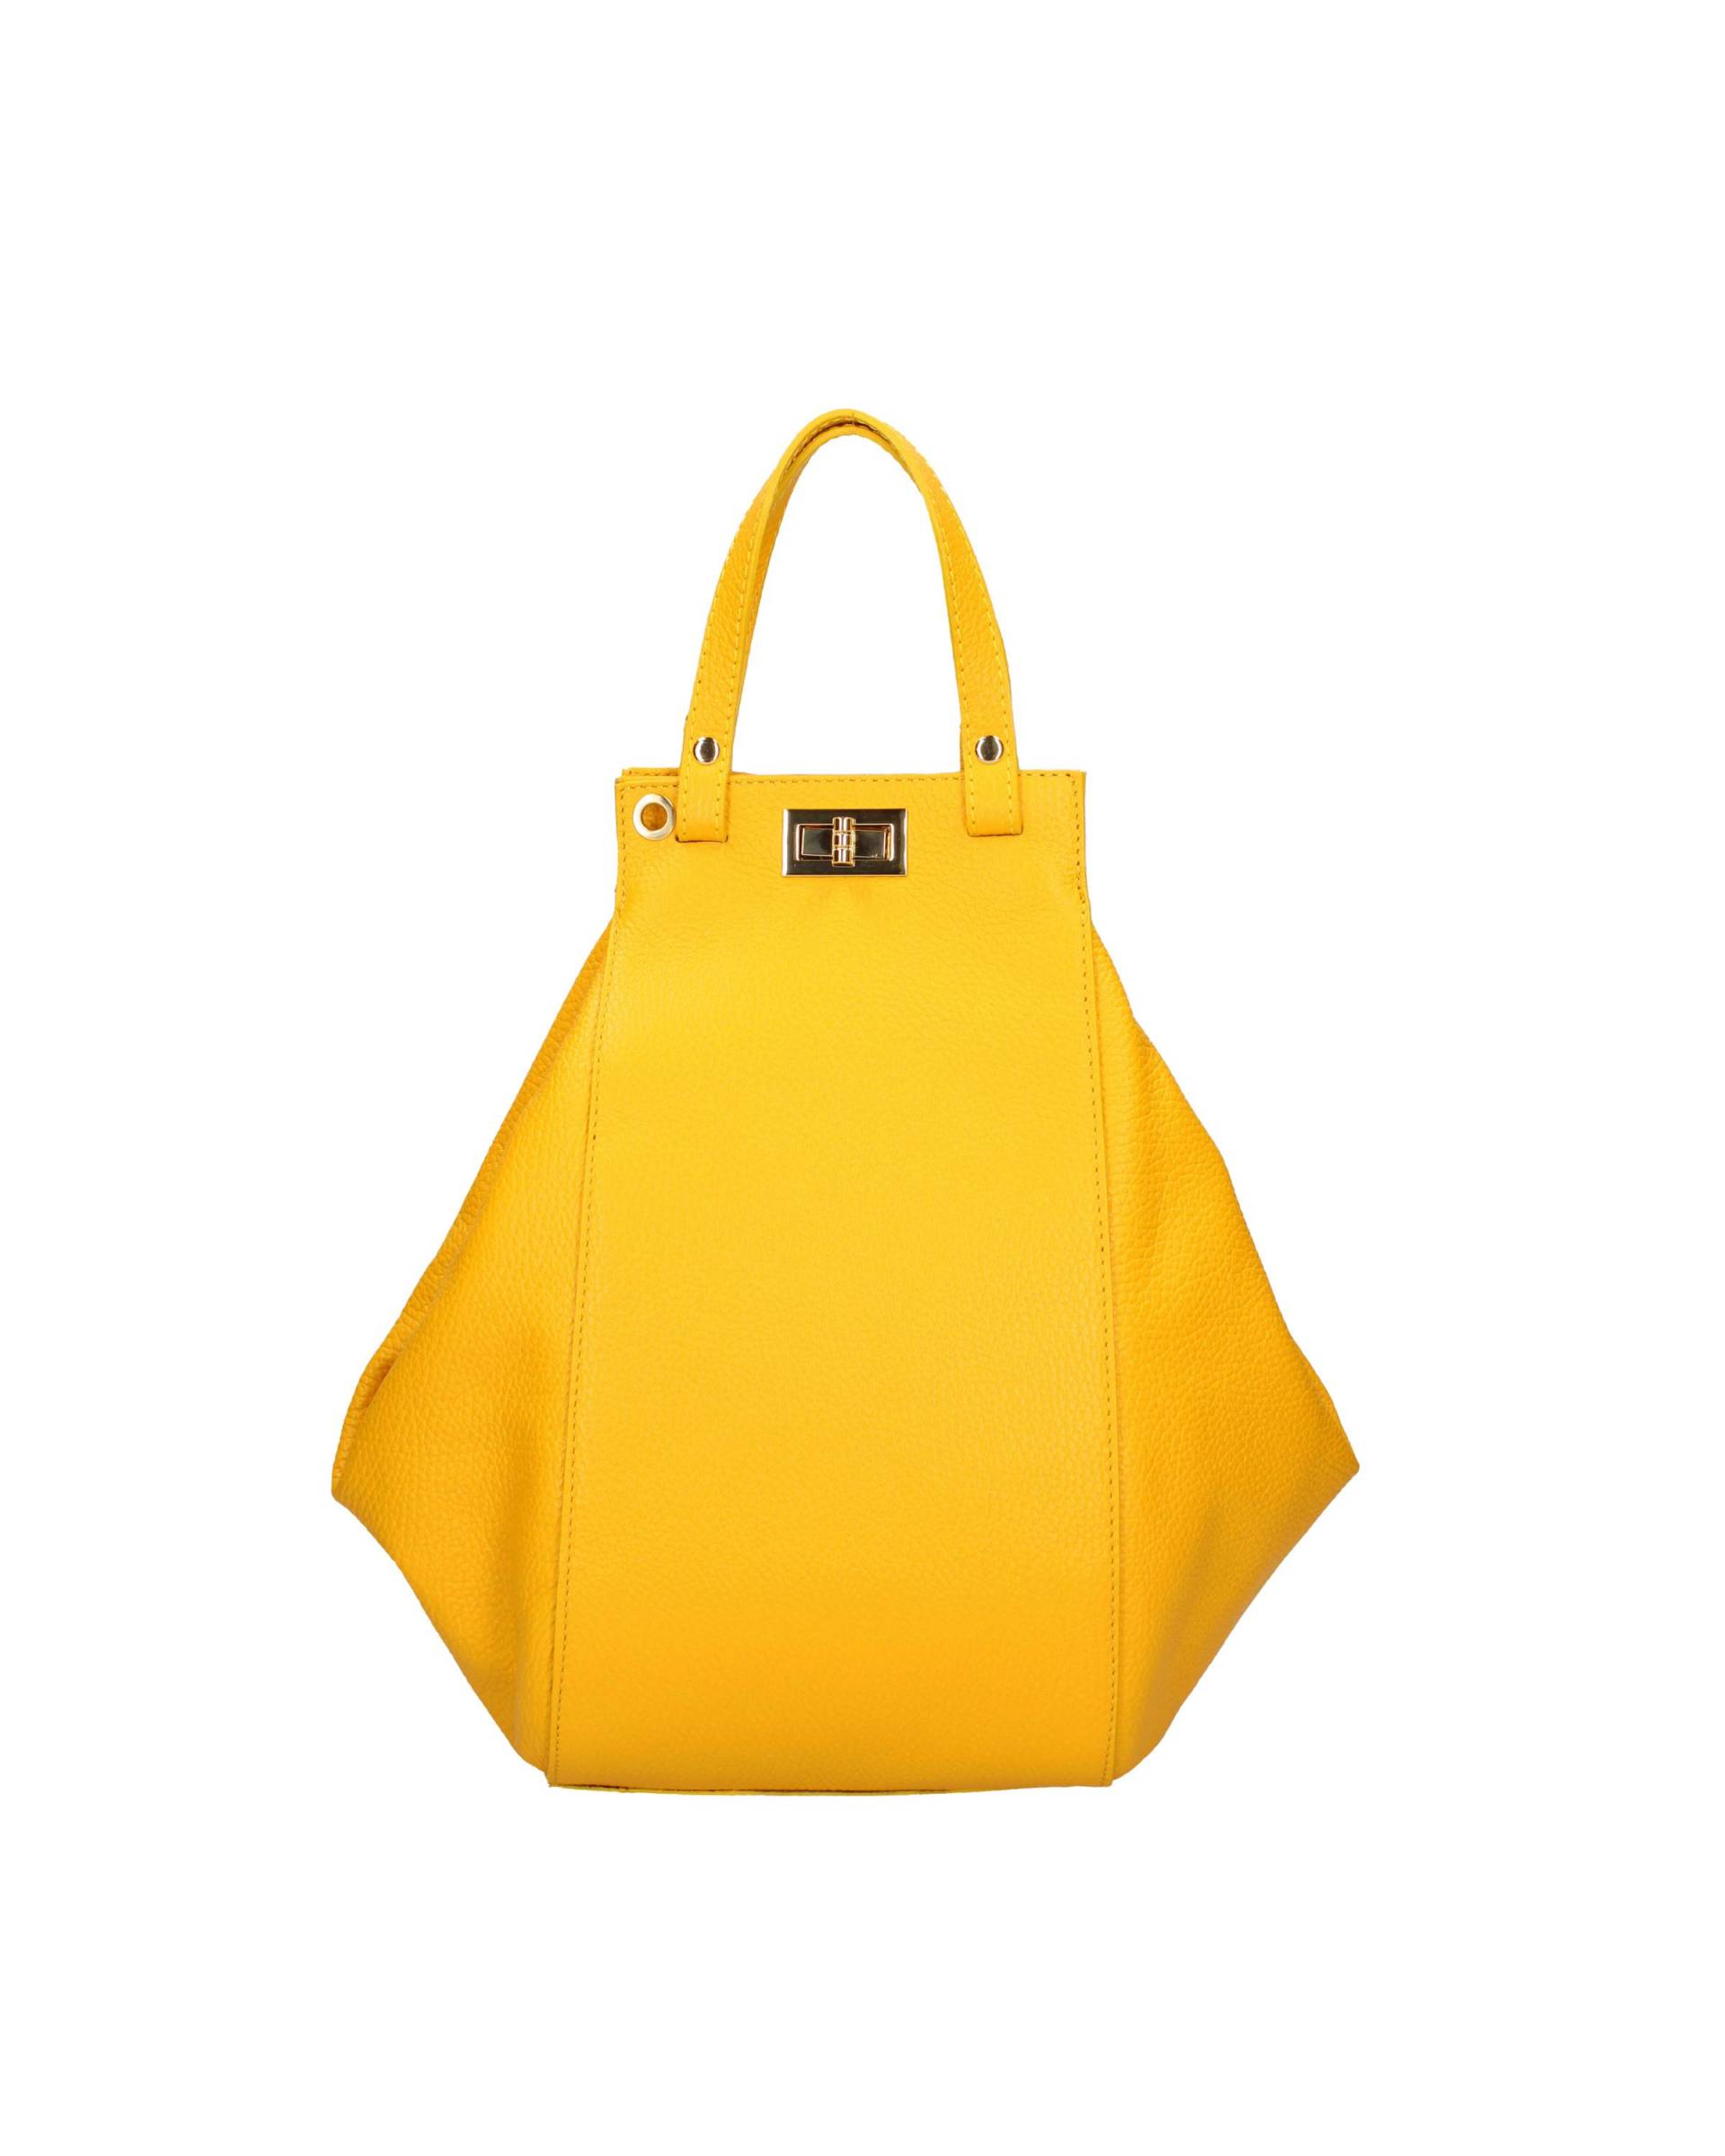 Handtasche Damen Gelb Bunt ONE SIZE von Viola Castellani